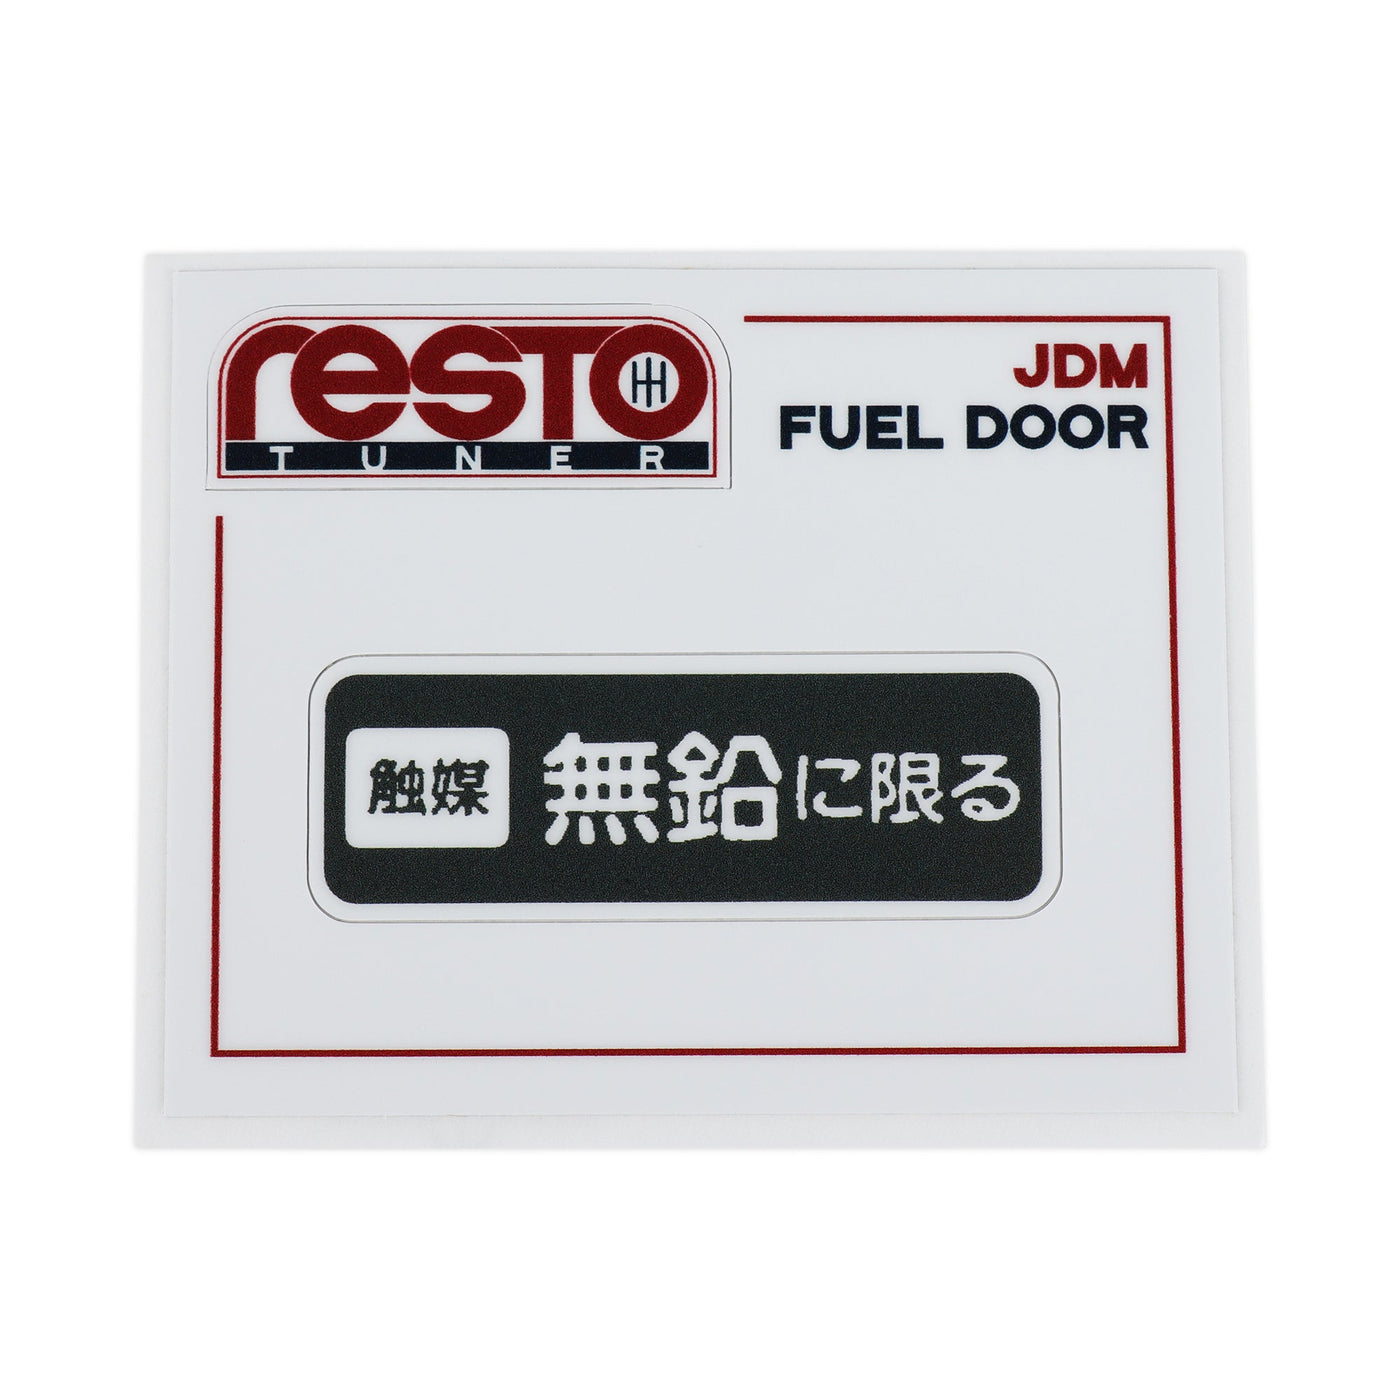 RestoTuner Honda & Acura Fuel Door Replacement Decal JDM Standard RST-DCL-01-02